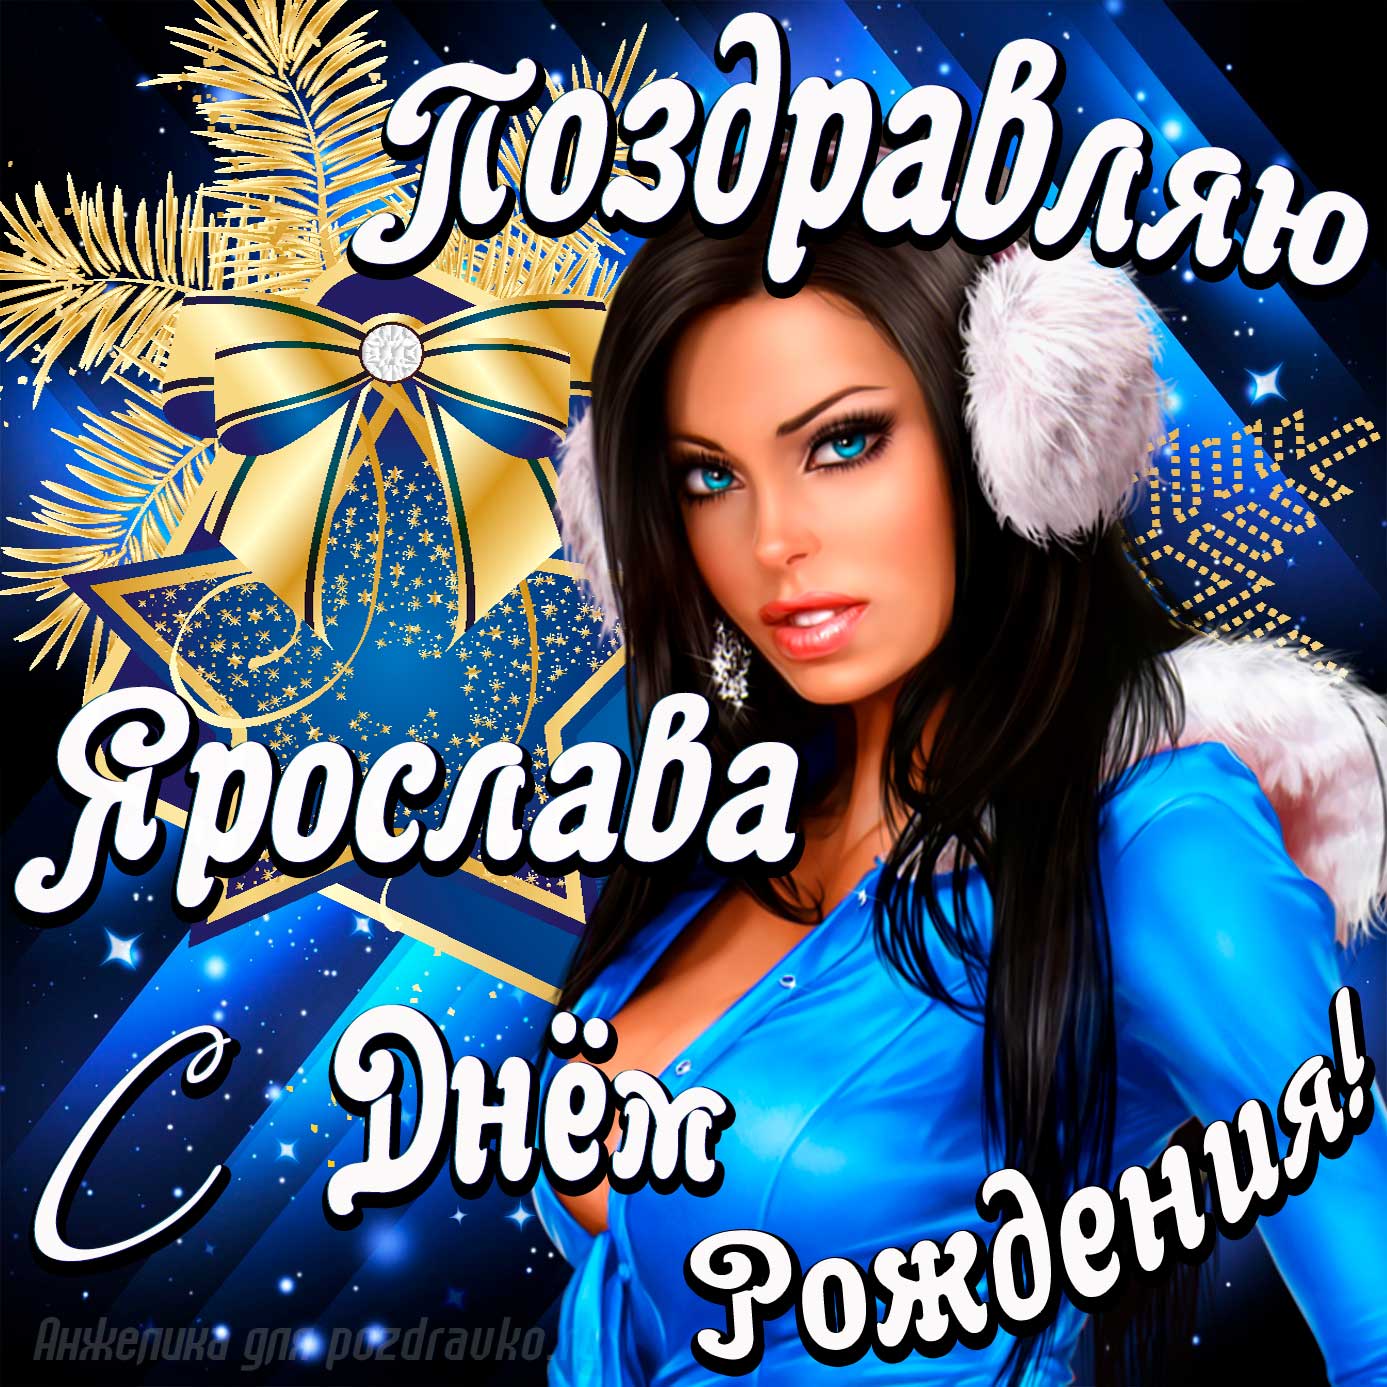 Открытка - поздравление Ярославу с Днем Рождения с красивой девушкой. Скачать бесплатно или отправить картинку.